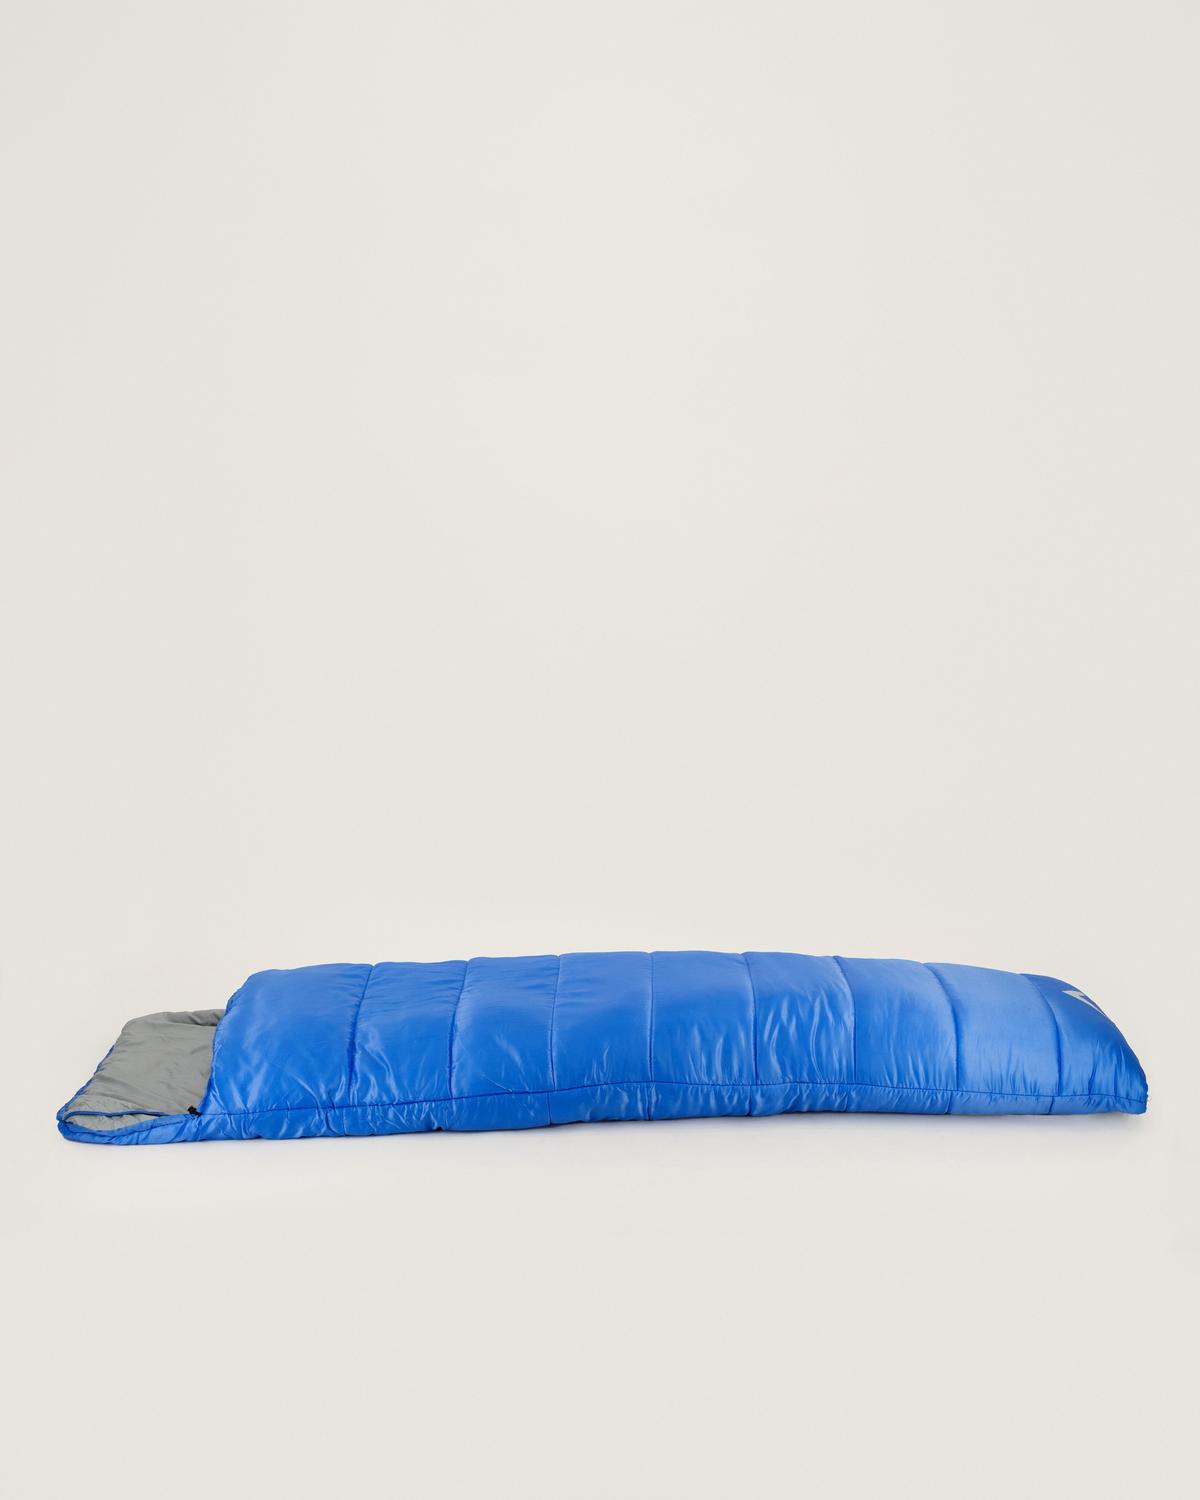 K-Way Traverse 2 Sleeping Bag -  Charcoal/Royal